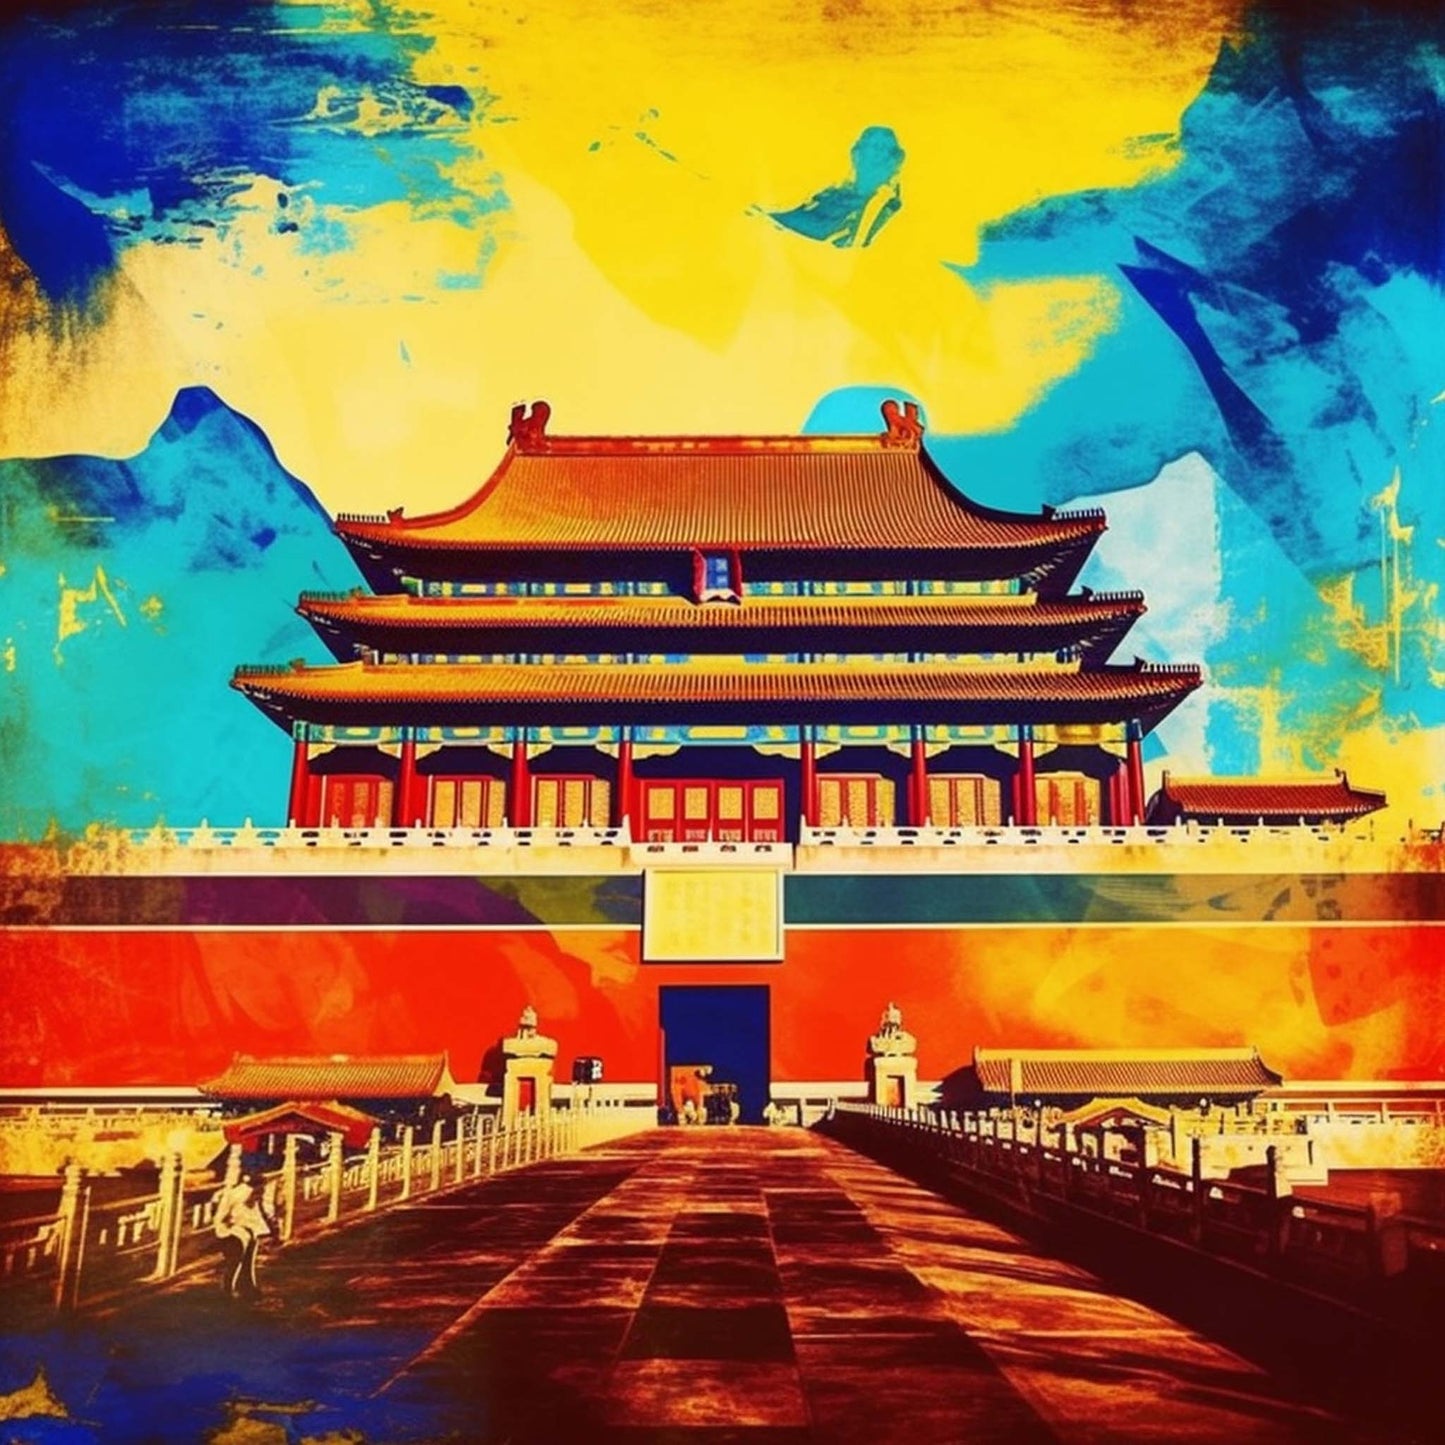 Urbanisto - Peking Verbotene Stadt - Wandbild in der Stilrichtung der Pop-Art